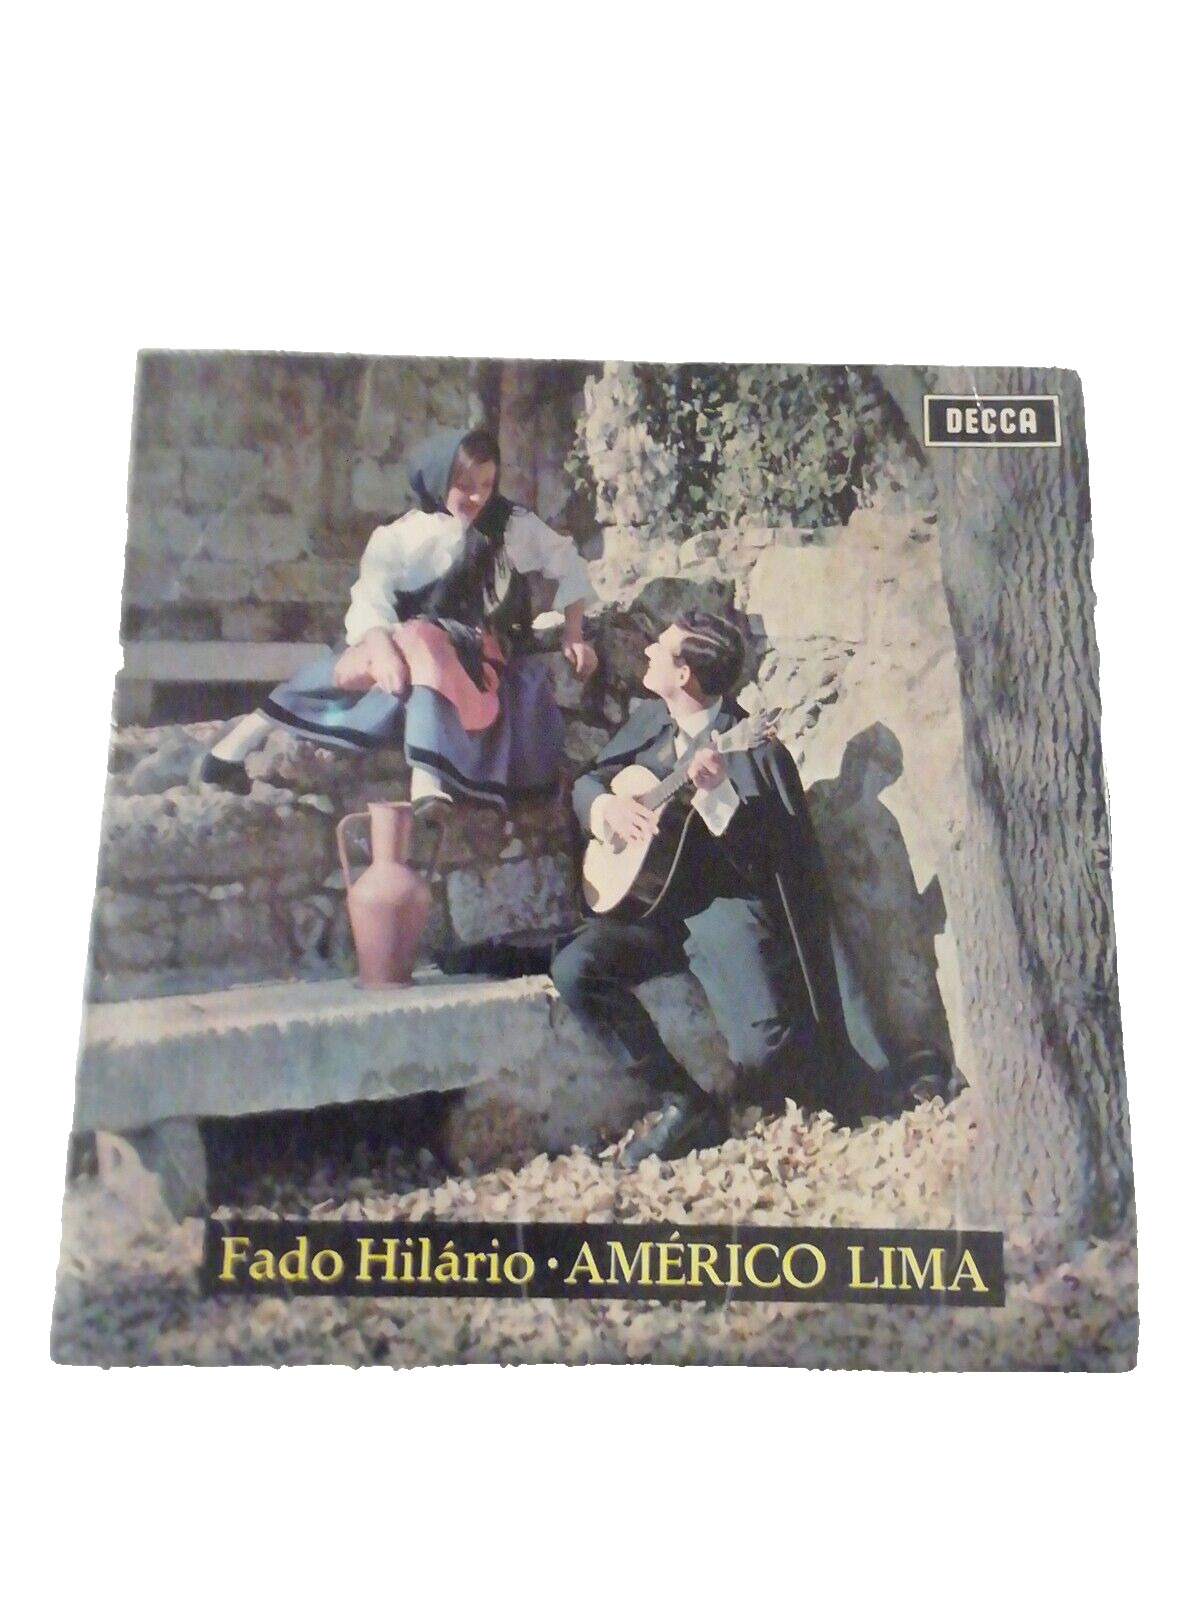 Vinyl Record Américo Lima "Fado Hilário" 7"45RPM EP